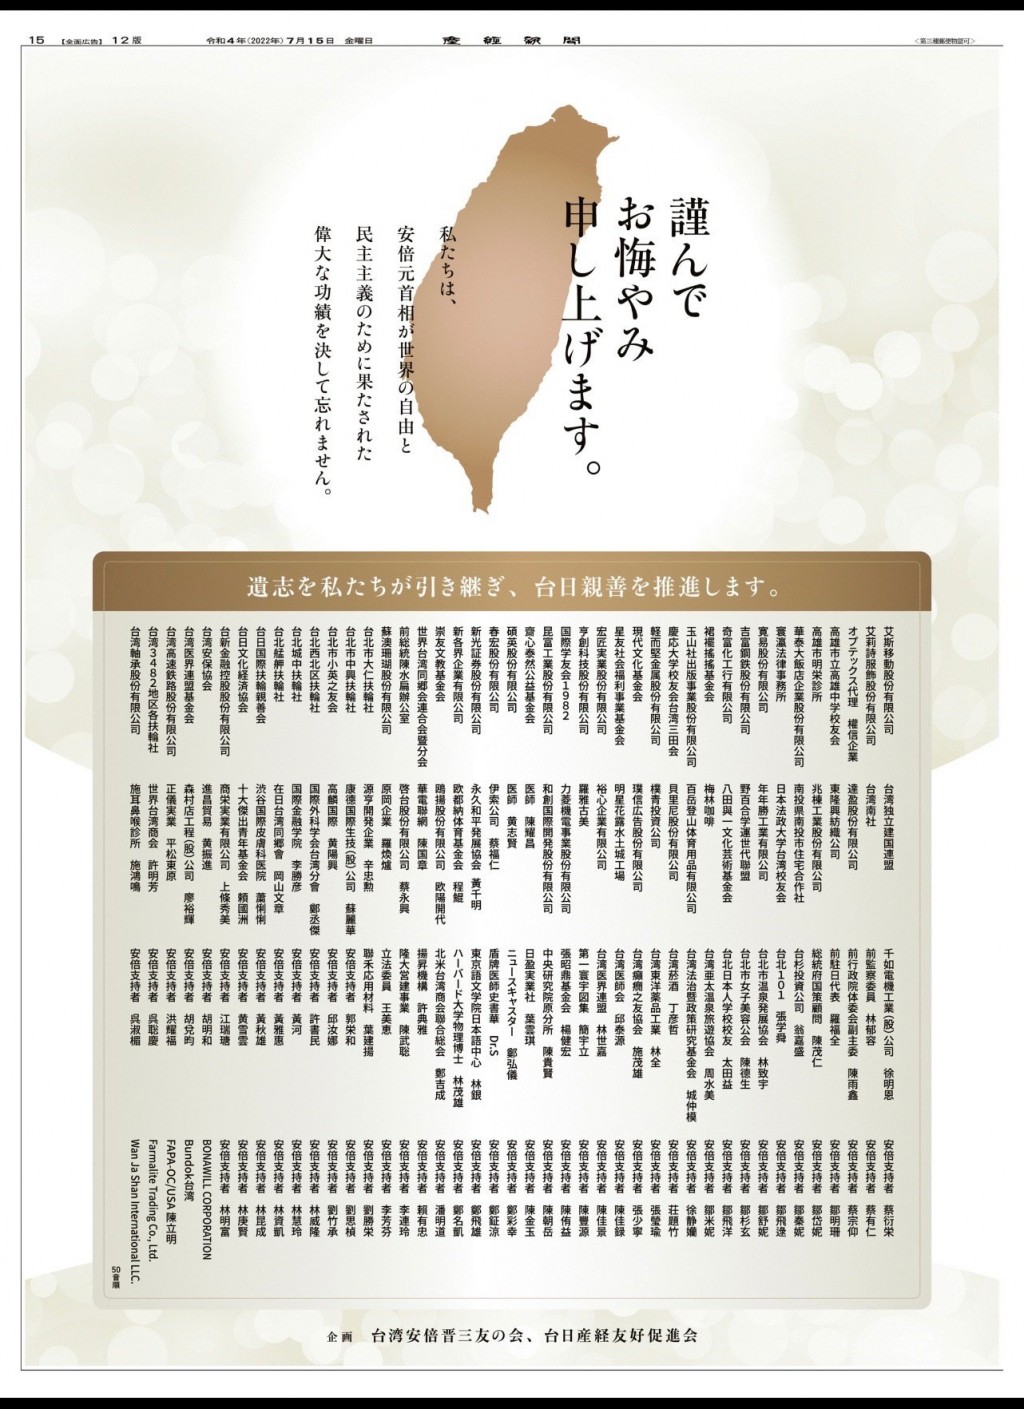 【更新】「台灣安倍之友會」募款在日本產經新聞刊全版廣告  175台人及企業聯名追悼安倍晉三